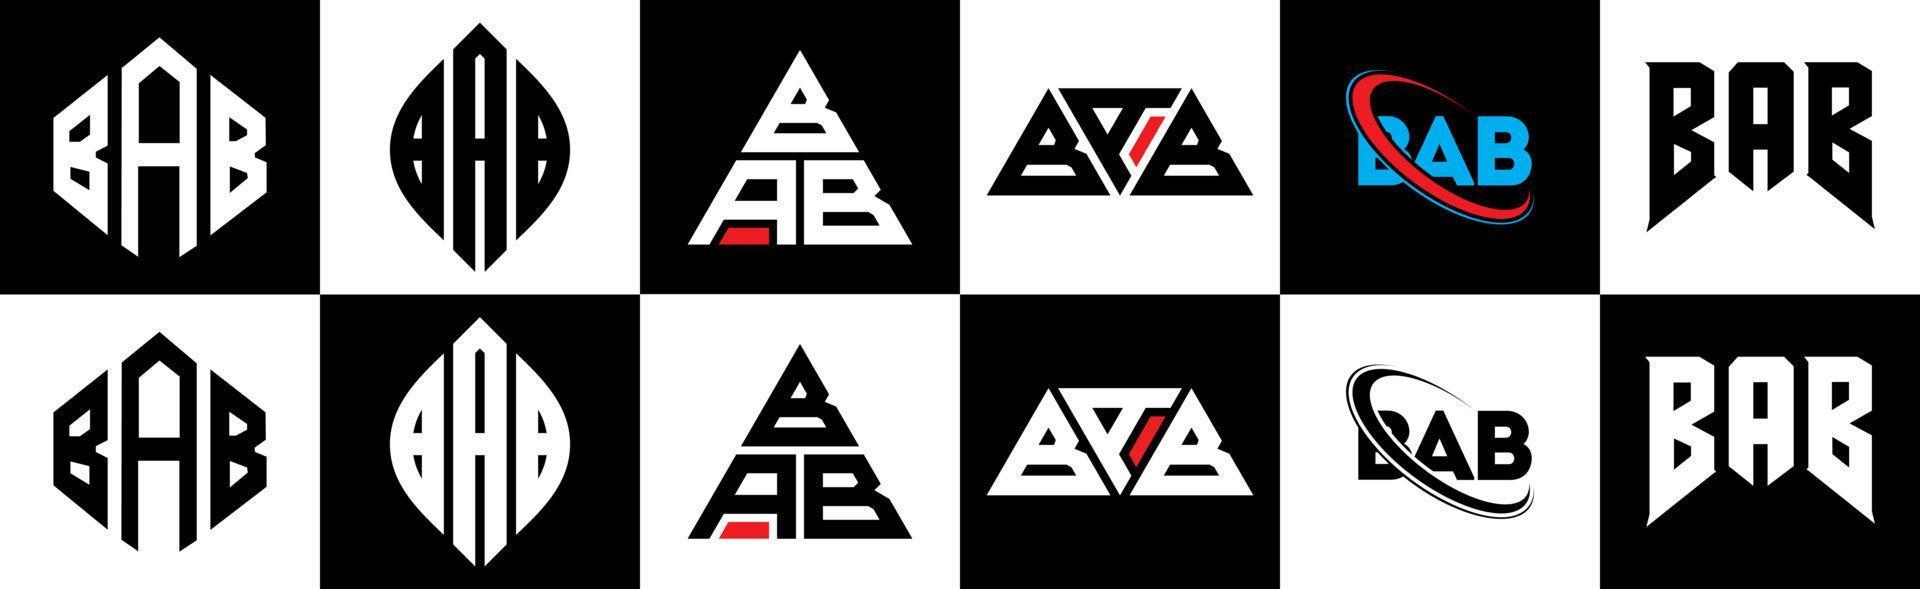 création de logo de lettre bab en six styles. bab polygone, cercle, triangle, hexagone, style plat et simple avec logo de lettre de variation de couleur noir et blanc dans un plan de travail. bab logo minimaliste et classique vecteur